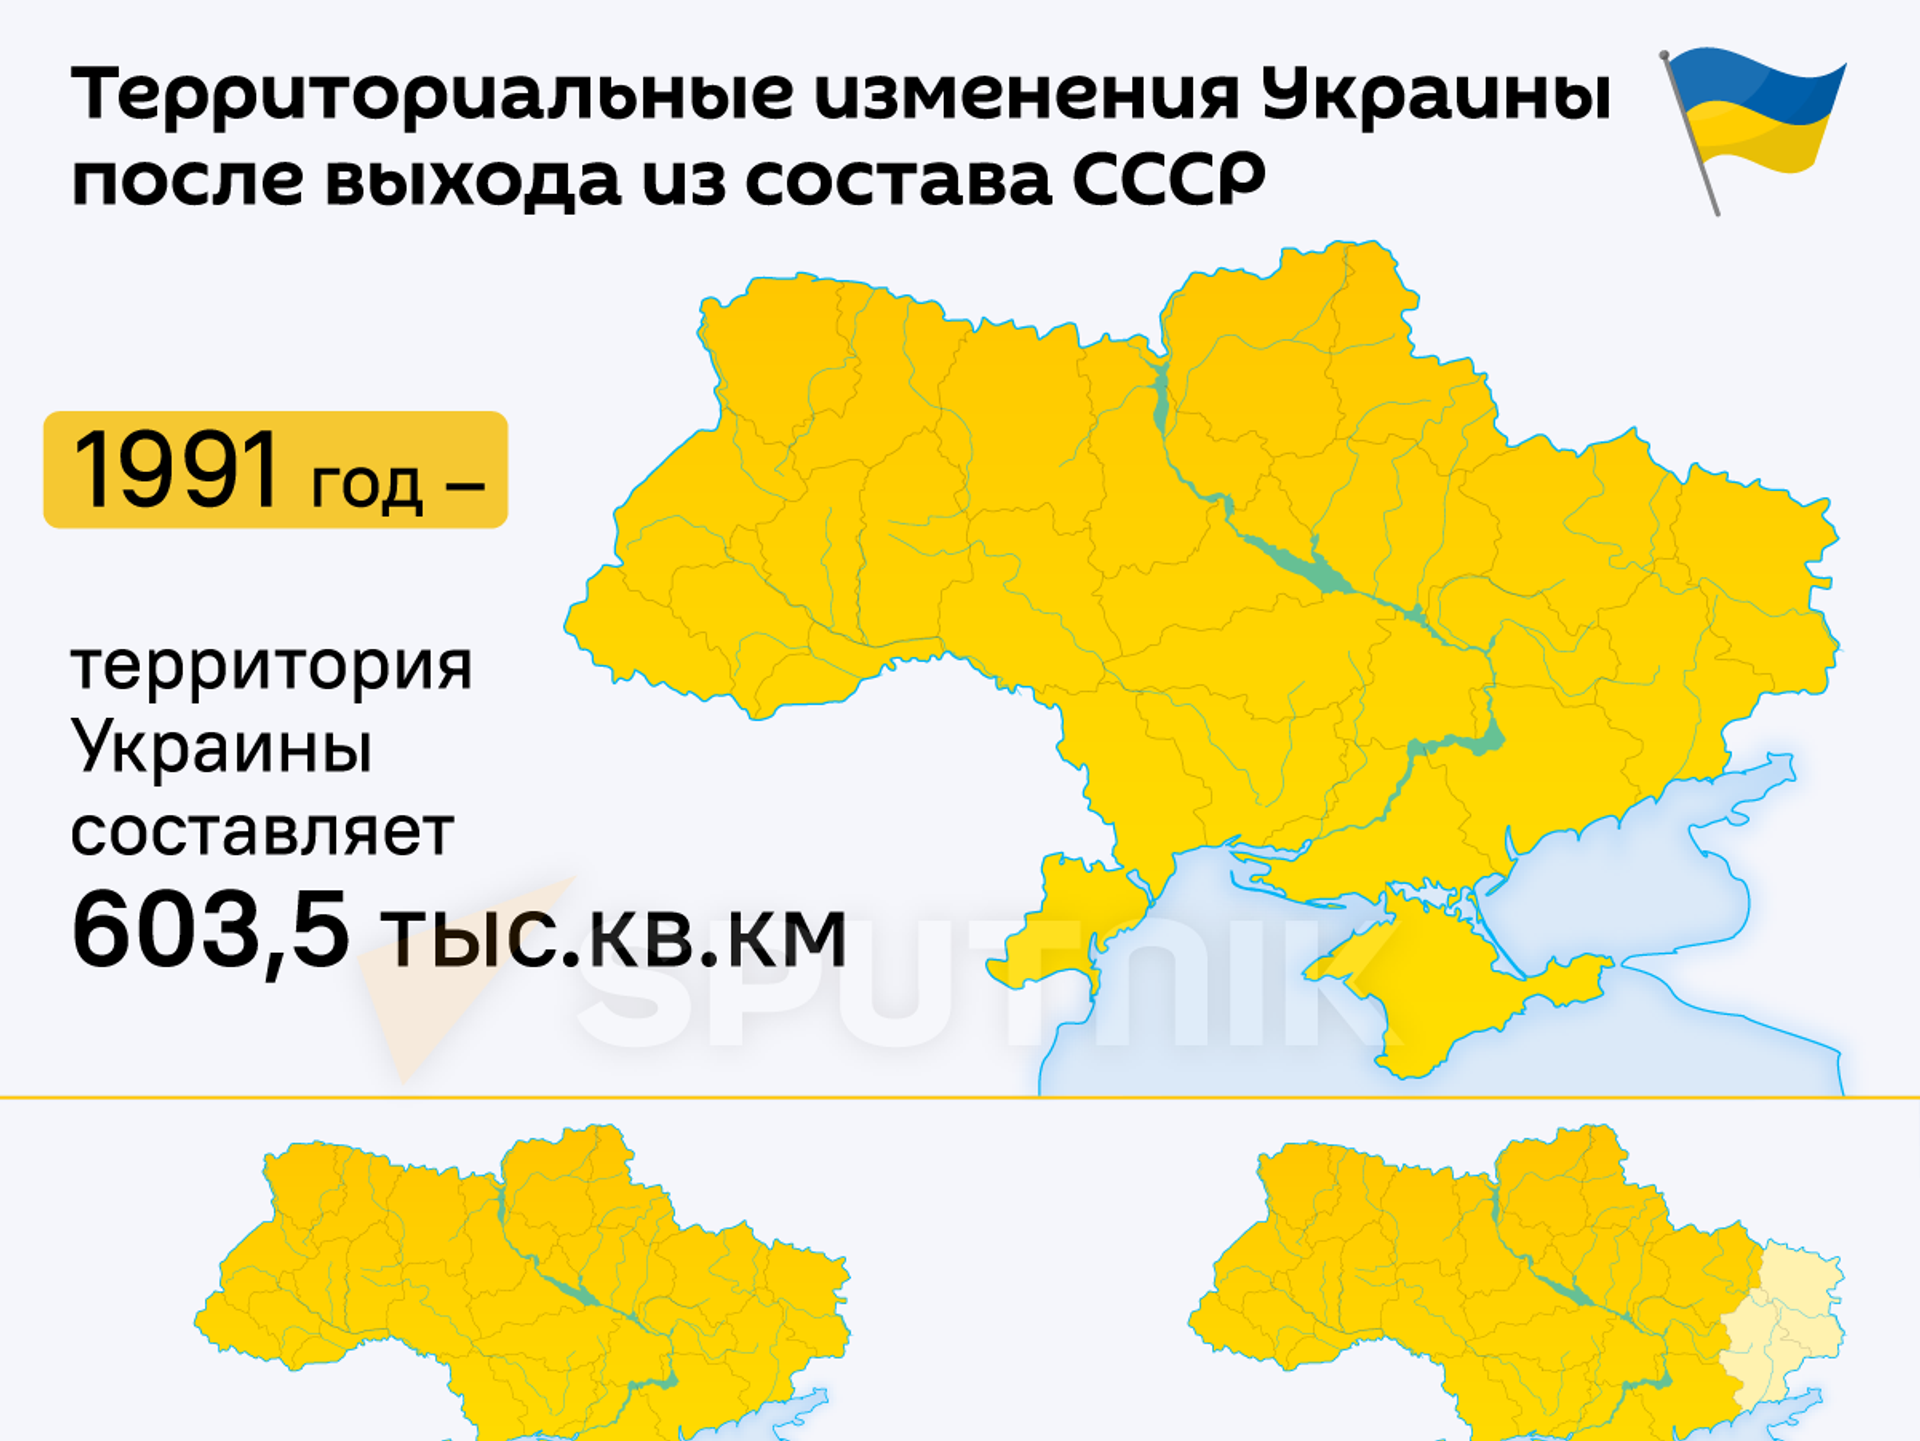 Какие были границы украины в 1991 году. Территрория уарпинв. Территория Укран. Территория Украины 2014 года. Территория Украины 1991 года.